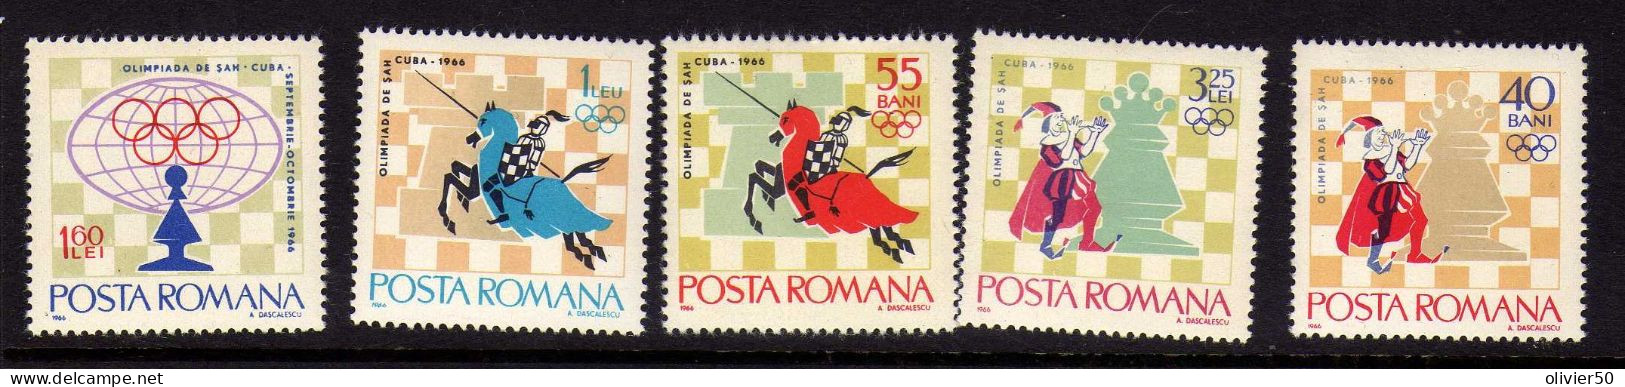 Roumanie - 1966  -  Tournois International D'Echecs - Cuba - La Havane -Neufs** - MNH  - - Unused Stamps